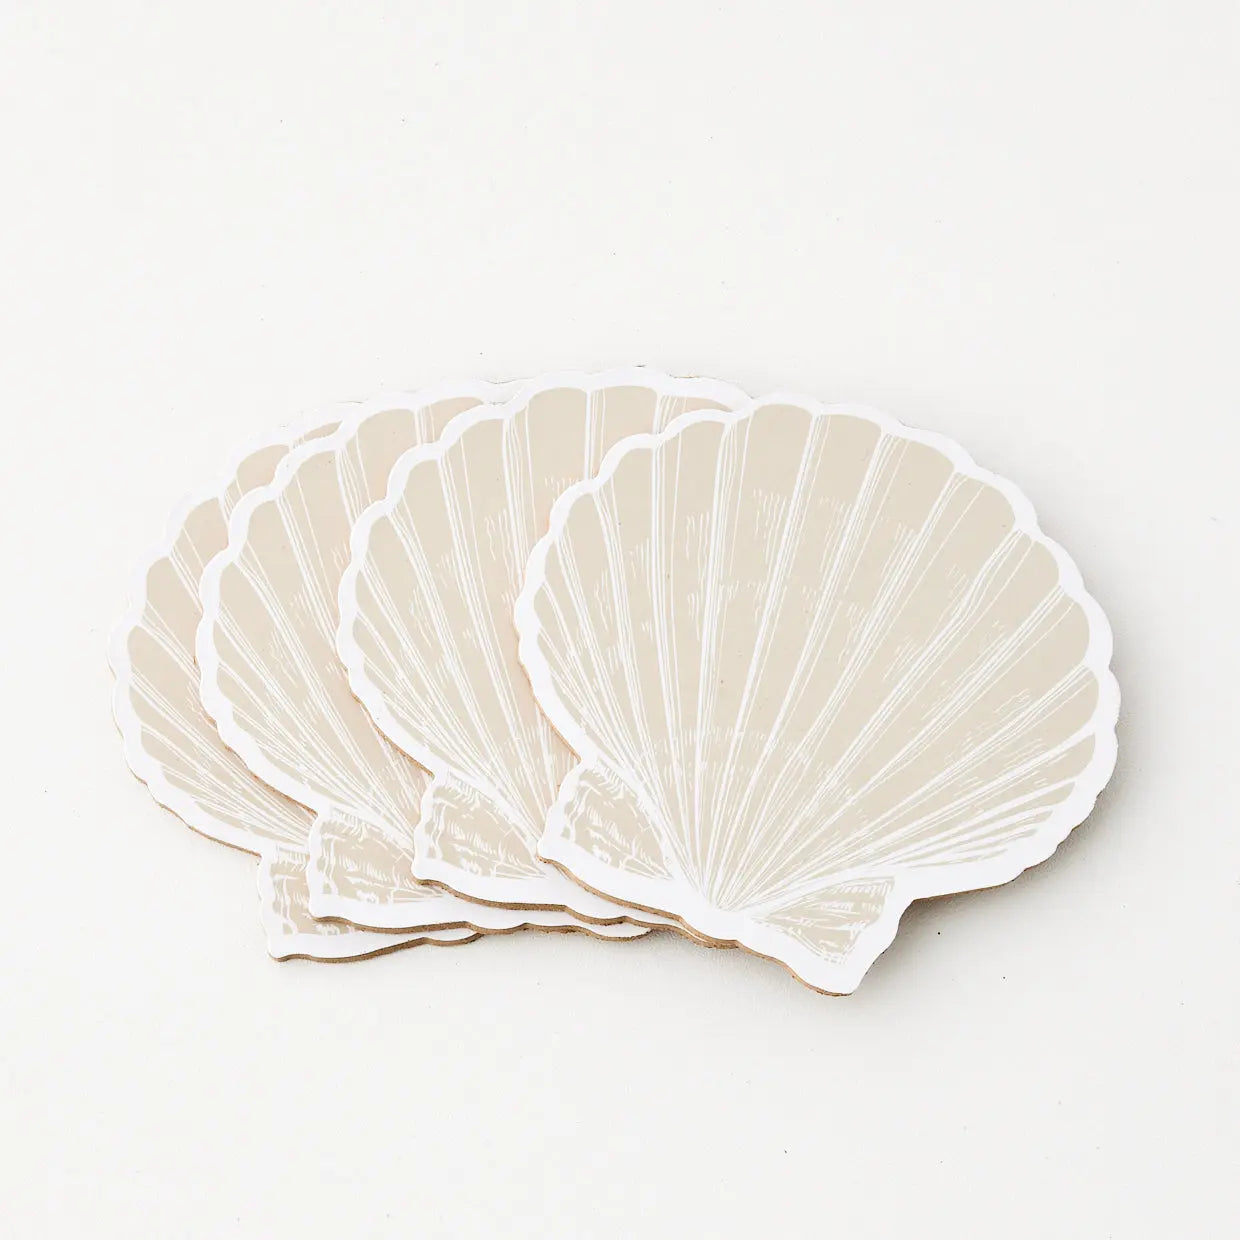 Clam Shell Coaster Set of 4 Natural - GigiandTom